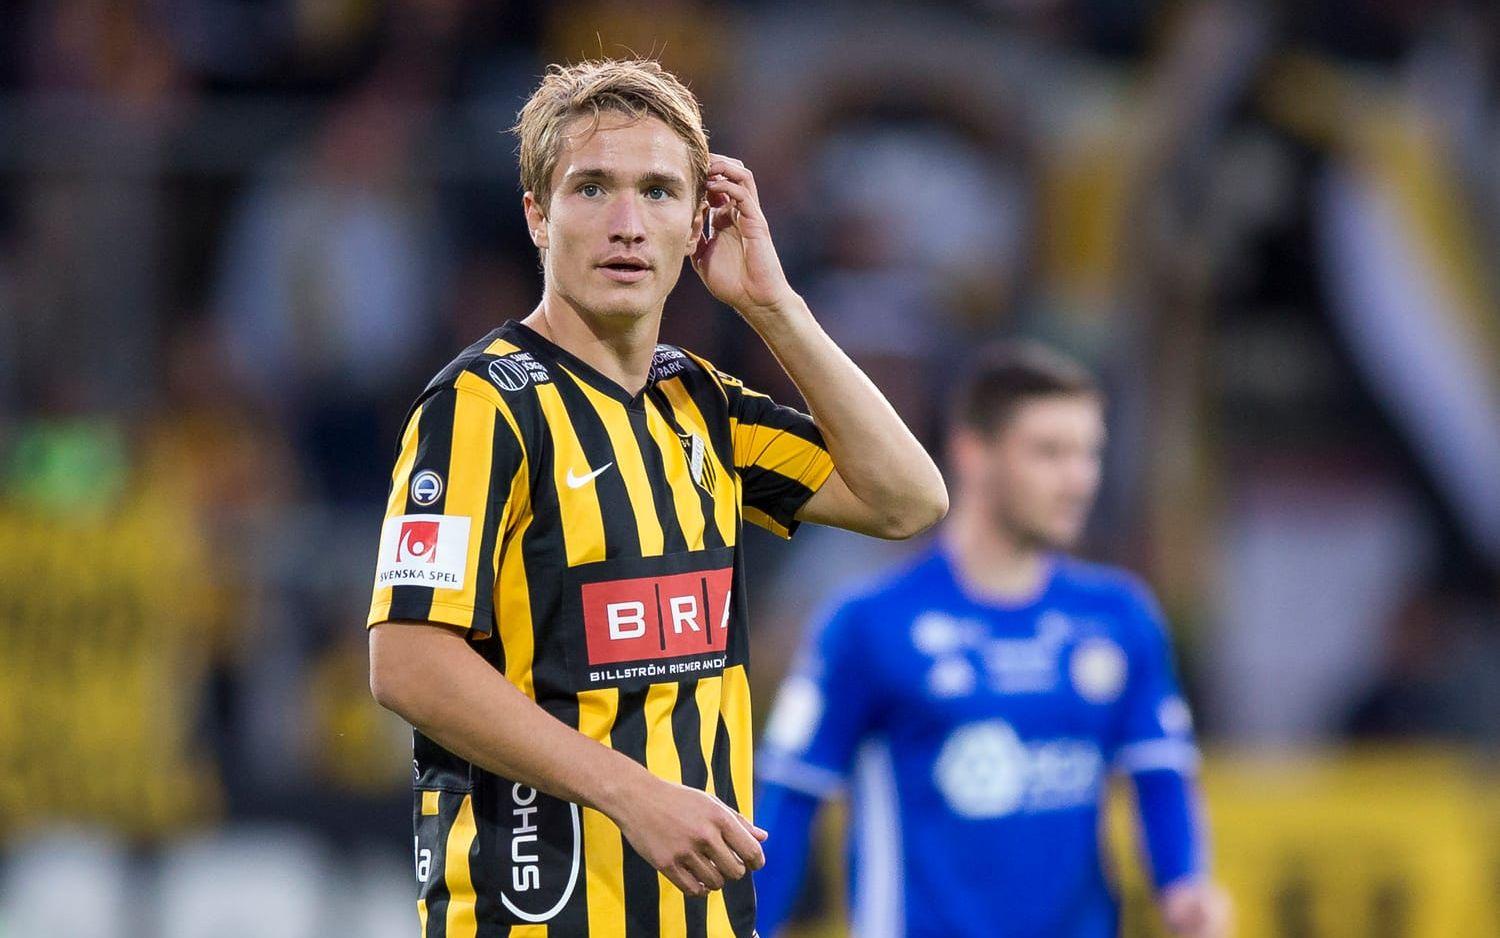 Klubben gör sig även av med Jakob Lindström som kom från Öis inför säsongen – en spelare som snart lär vara presenterad av just Öis. Bild: Bildbyrån